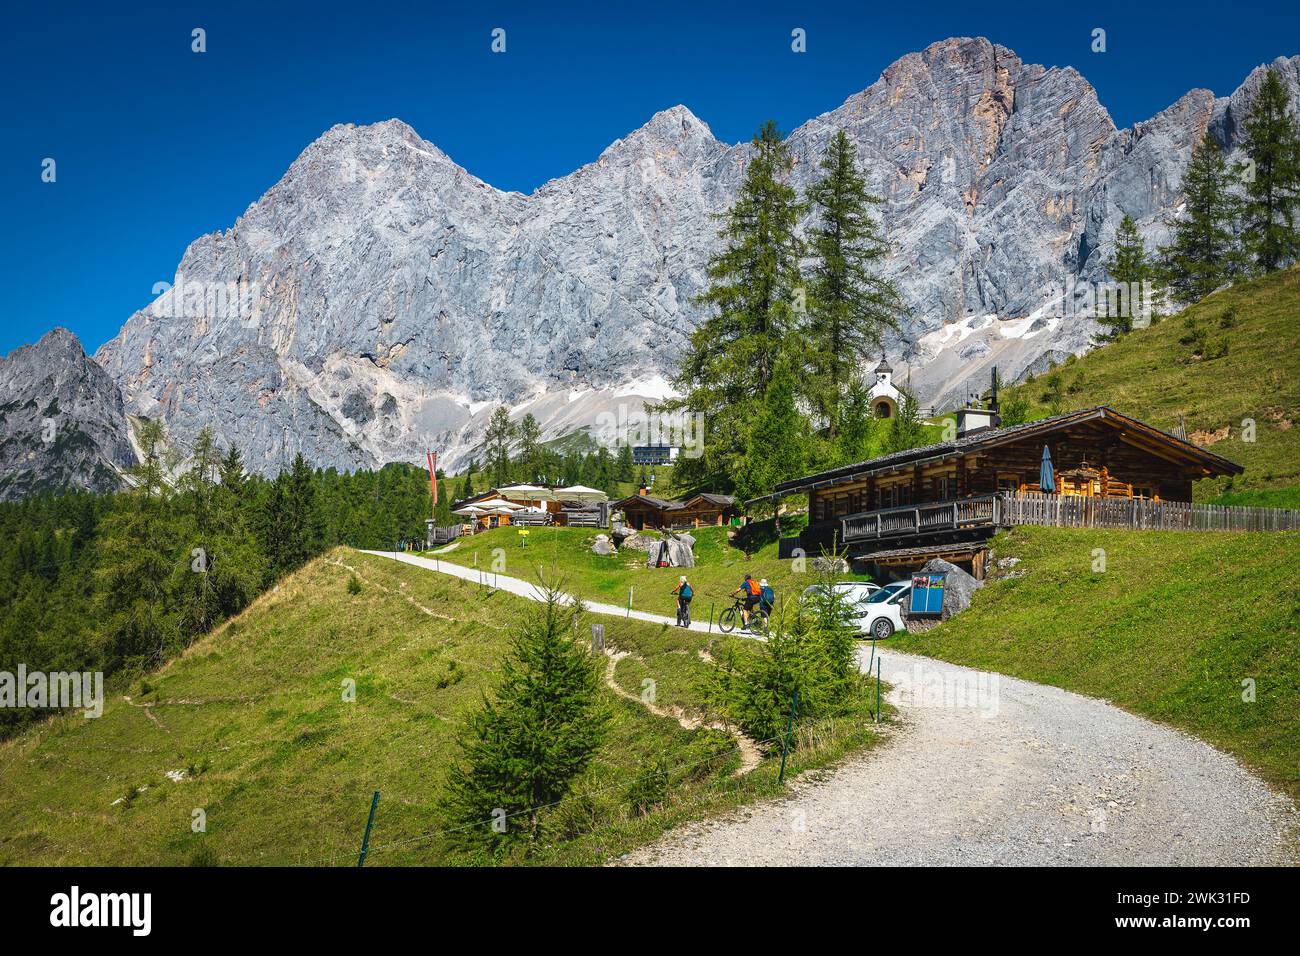 Impresionante ubicación de senderismo y viajes, camino rural y casas de madera en la ladera verde alpina. Impresionantes montañas de Dachstein en el fondo, Ramsau am Dach Foto de stock